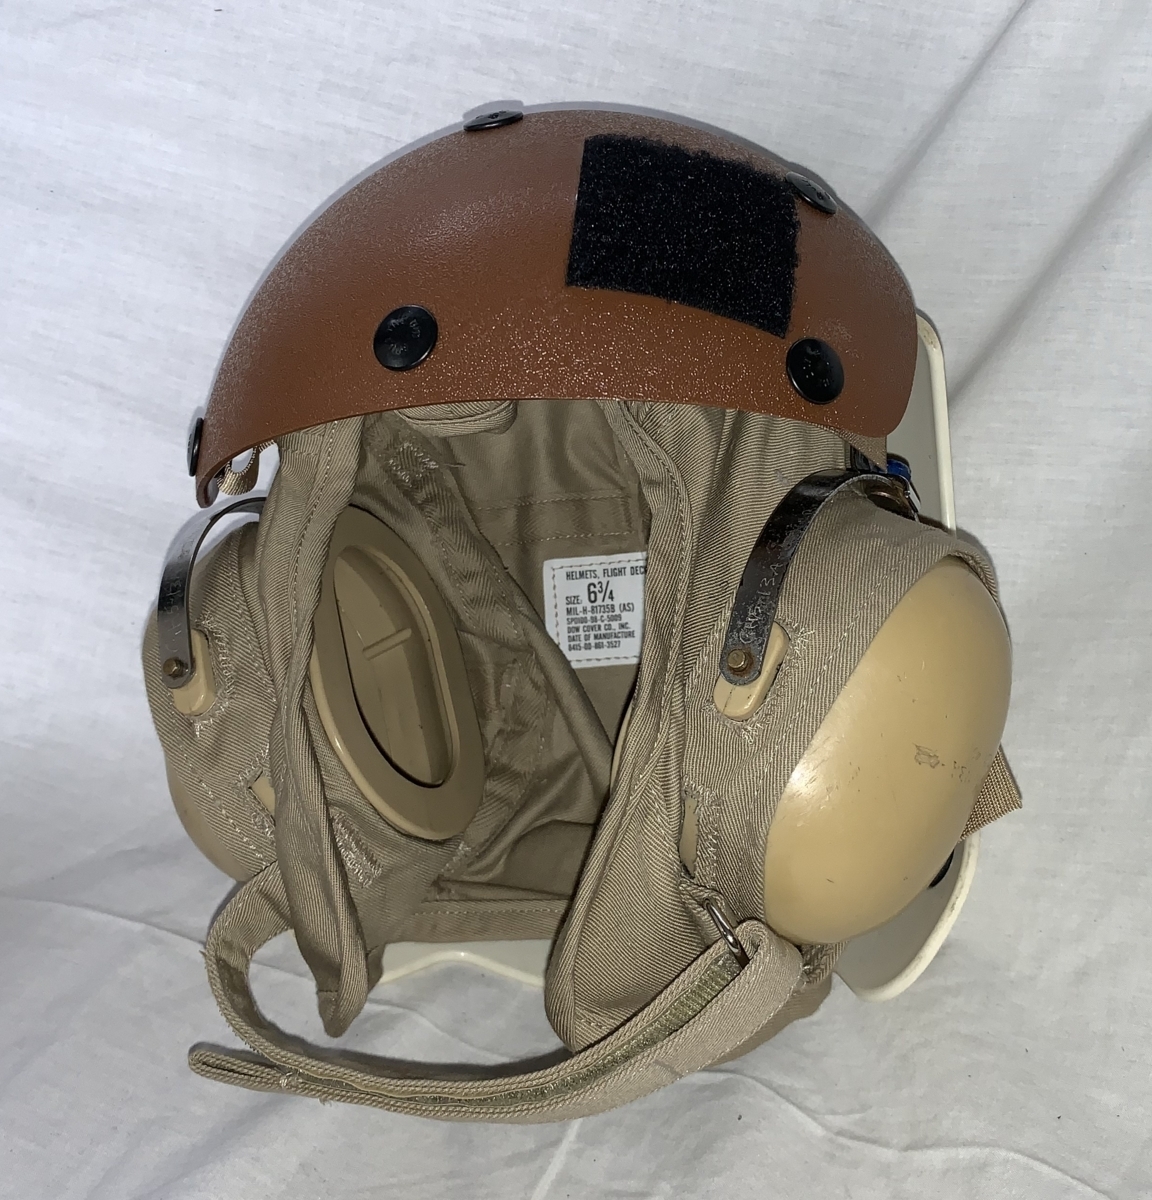  вооруженные силы США военно-морской флот полет панель Crew шлем NAVY военно-морской флот 98 год размер 6-3/4 Brown & белый US.AIR FORCE USAF ВВС 6106A